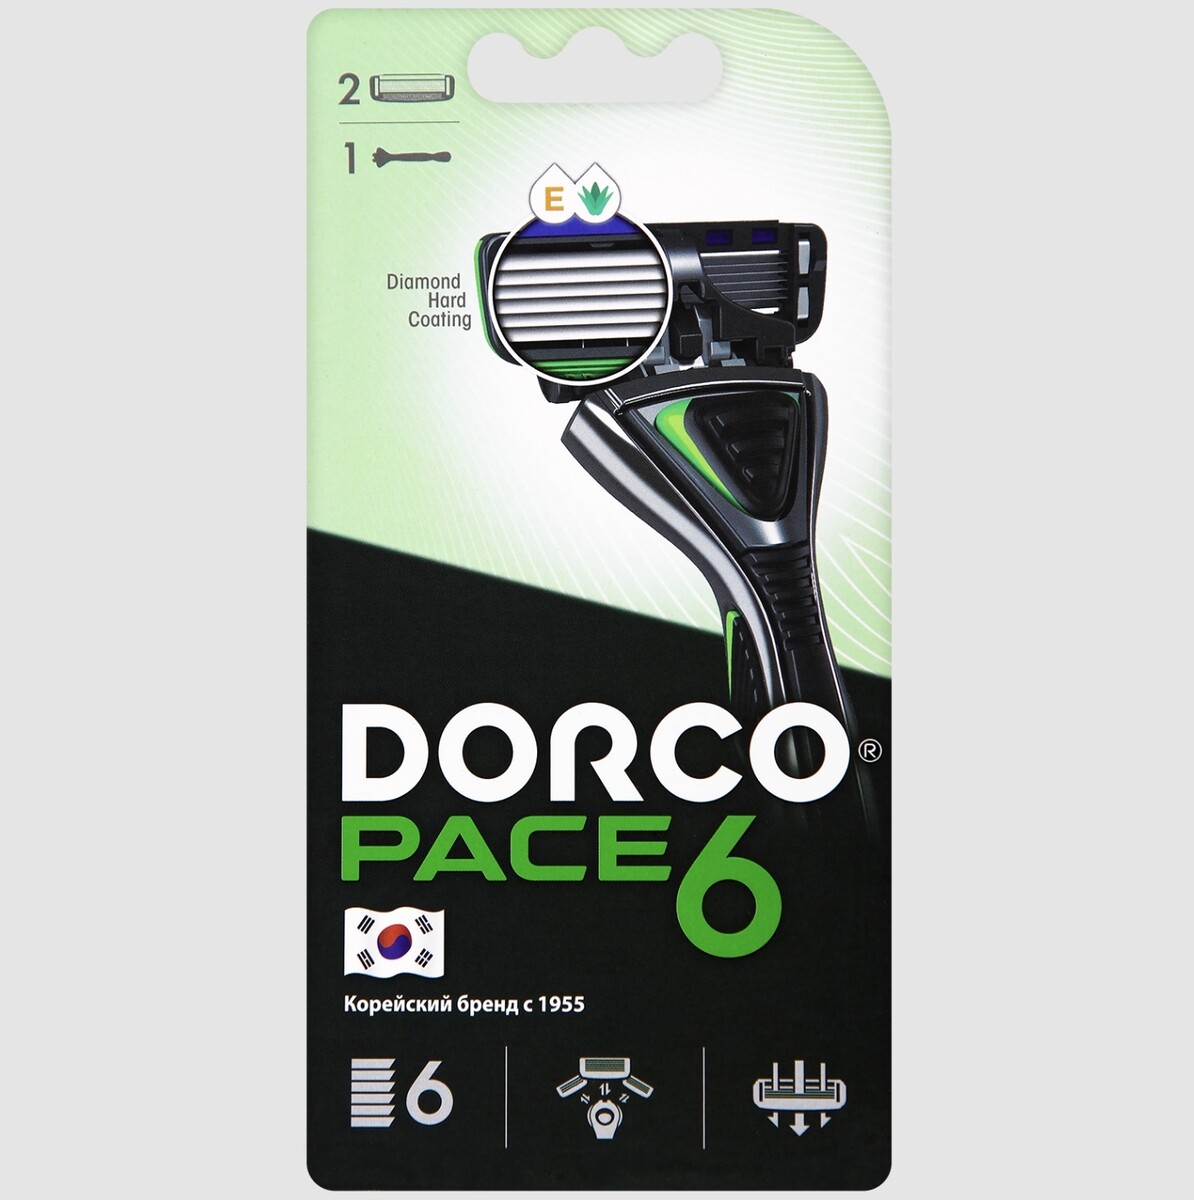 Dorco pace6 (станок+2's) система с 6лезвиями (ю.корея) dorco pace7 4 s сменные кассеты с 7лезвиями ю корея